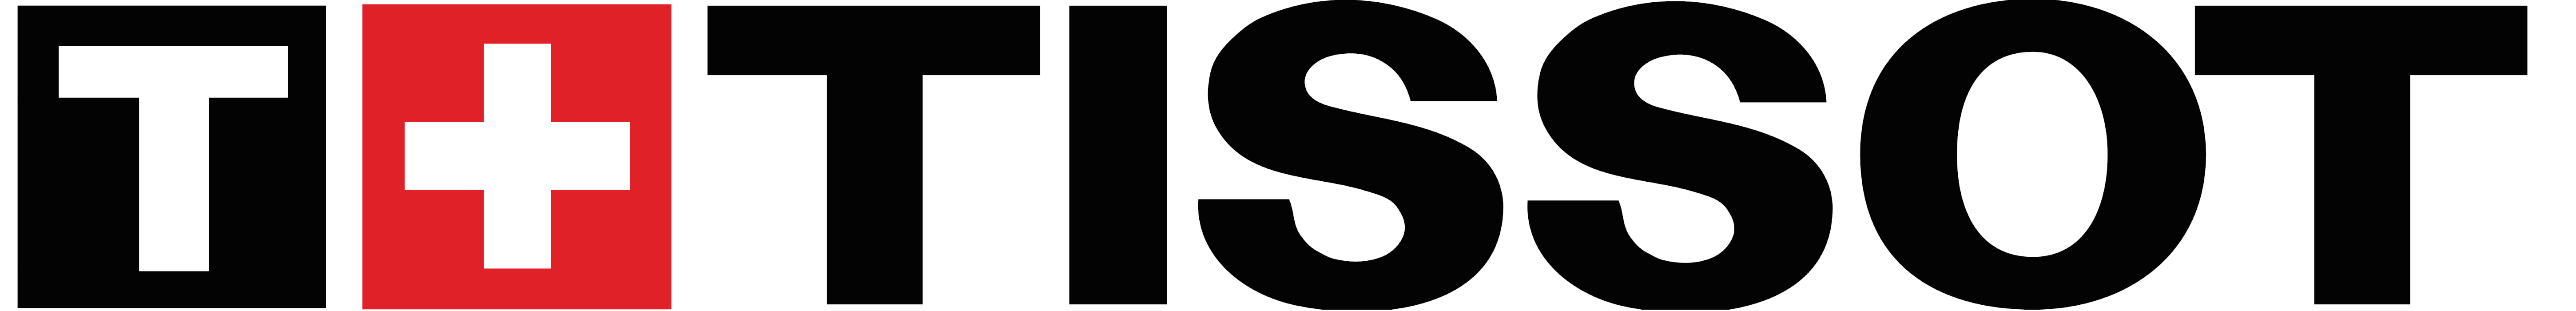 Tissots logga i svart och rött, först är ett stort vitt T i en svart fyrkant, sen är det ett vitt plustecken i en röd fyrkant och sen texten 